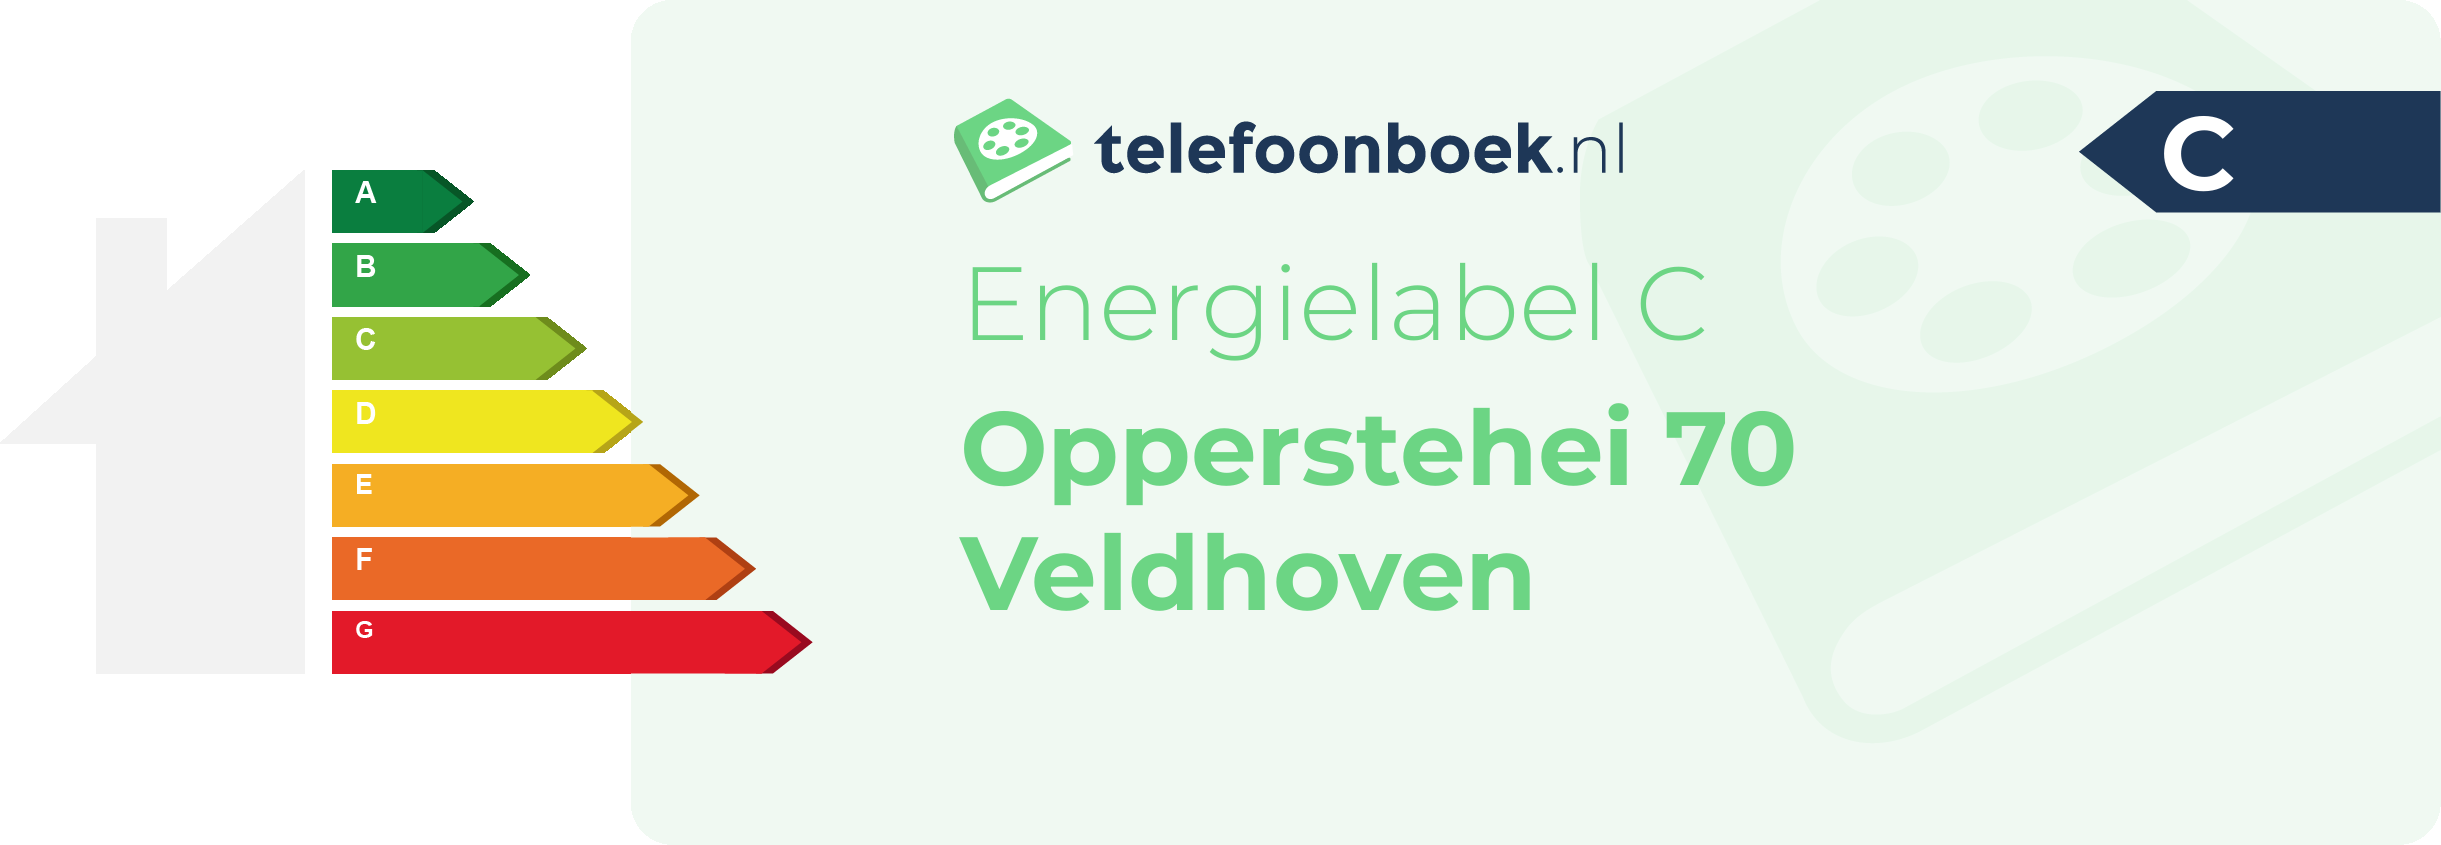 Energielabel Opperstehei 70 Veldhoven